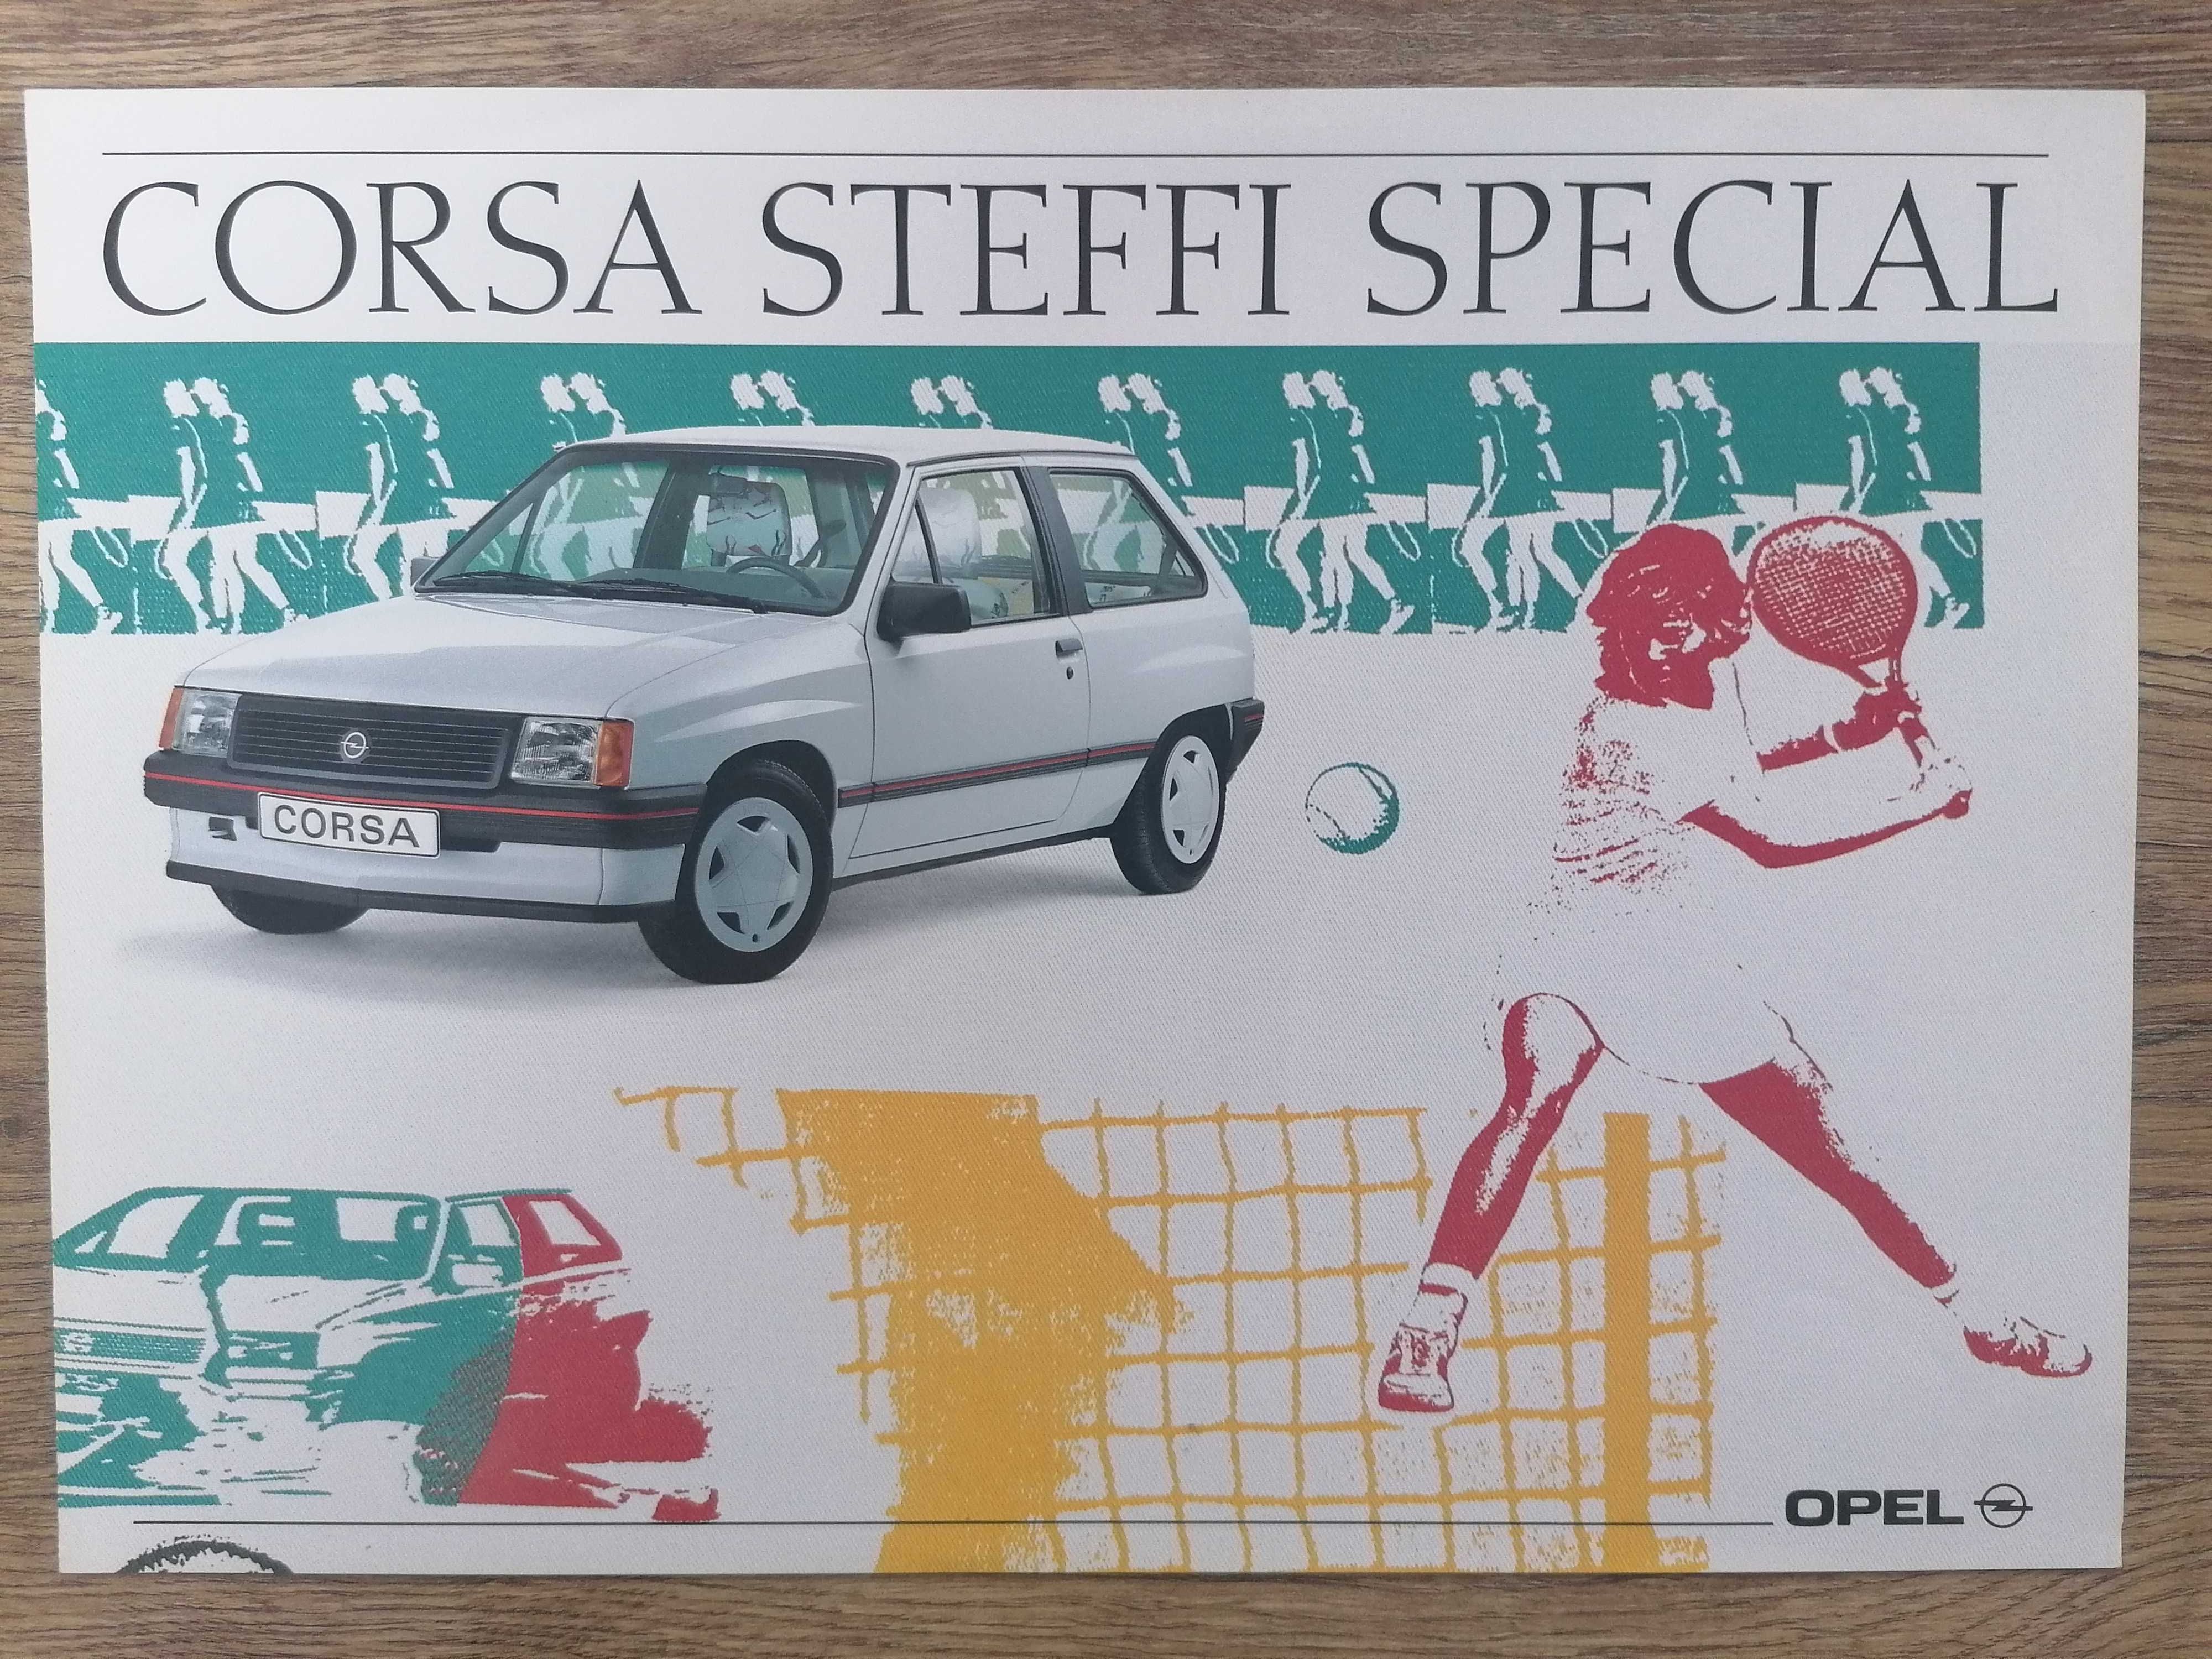 Prospekt Opel Corsa Steffi Special.